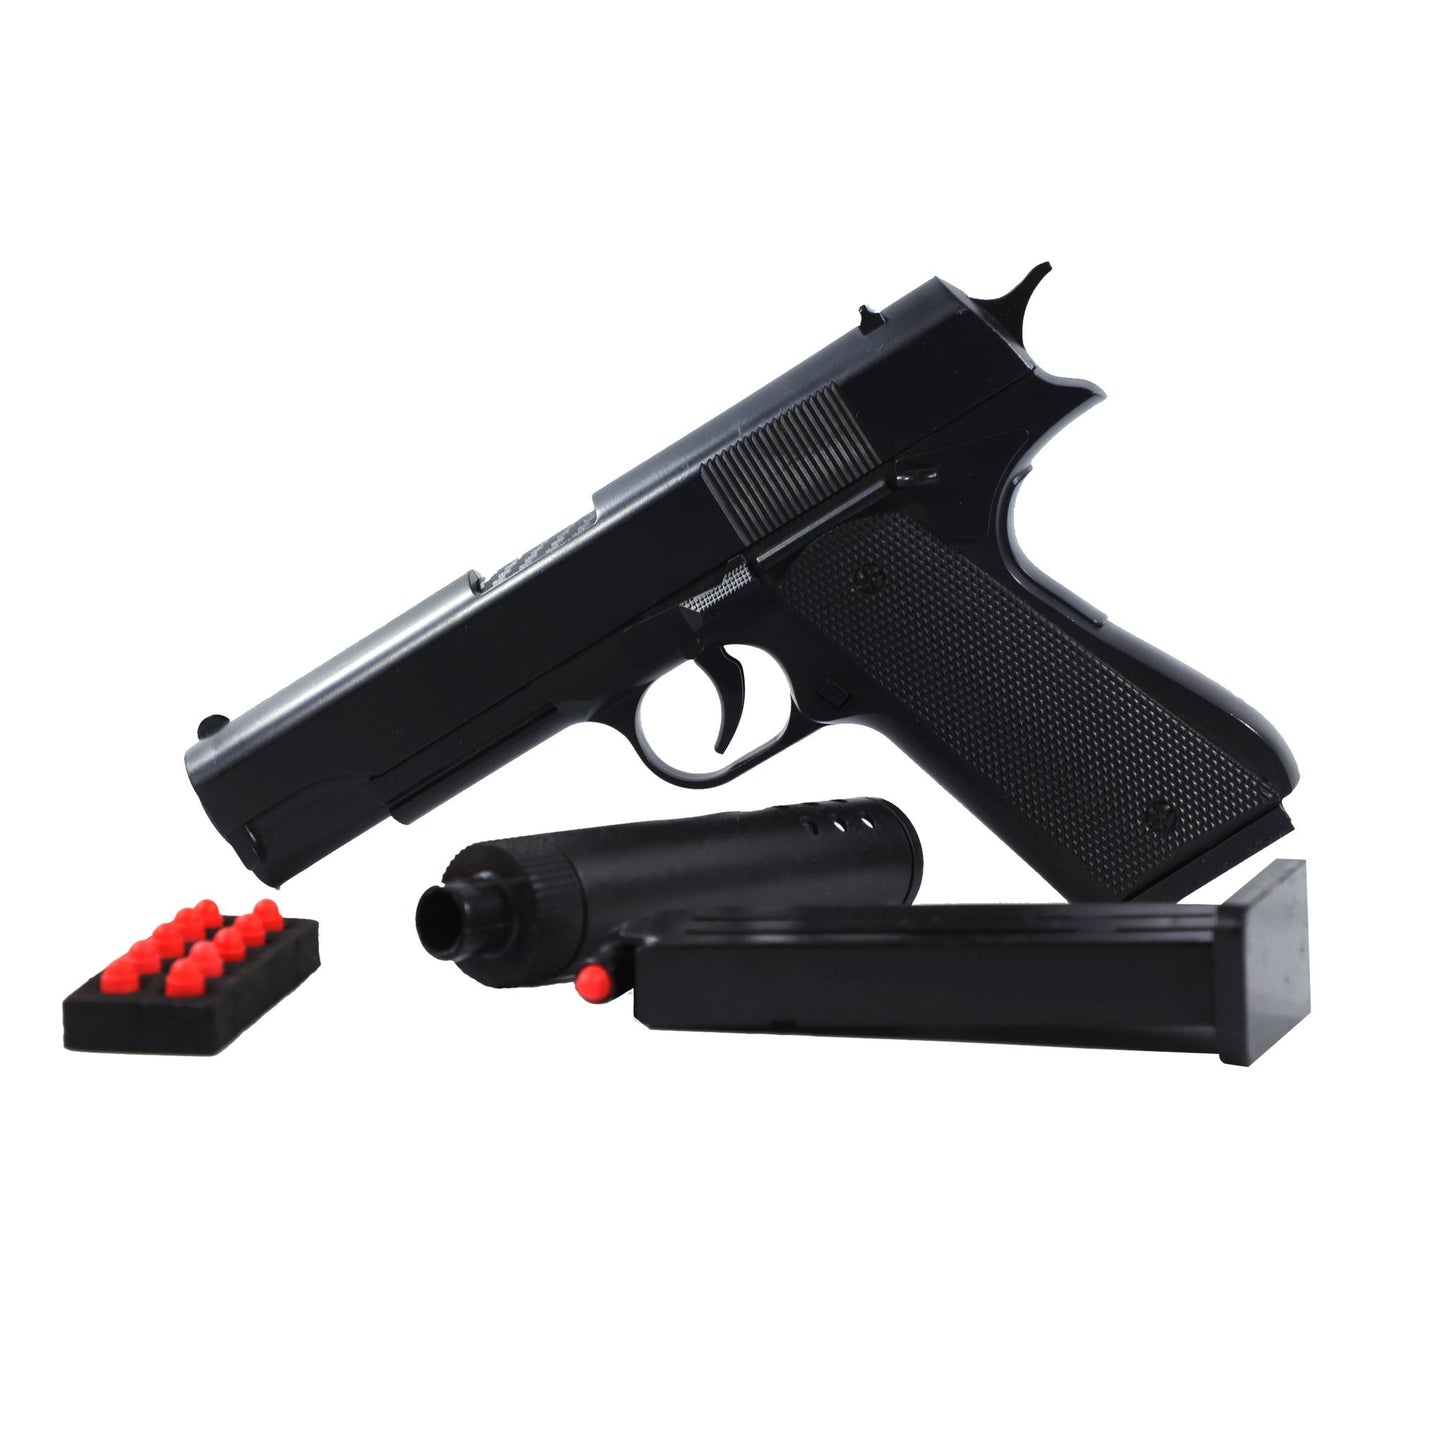 Kids Toy gun Plastic Pistol | Toy guns For Kids | GEX